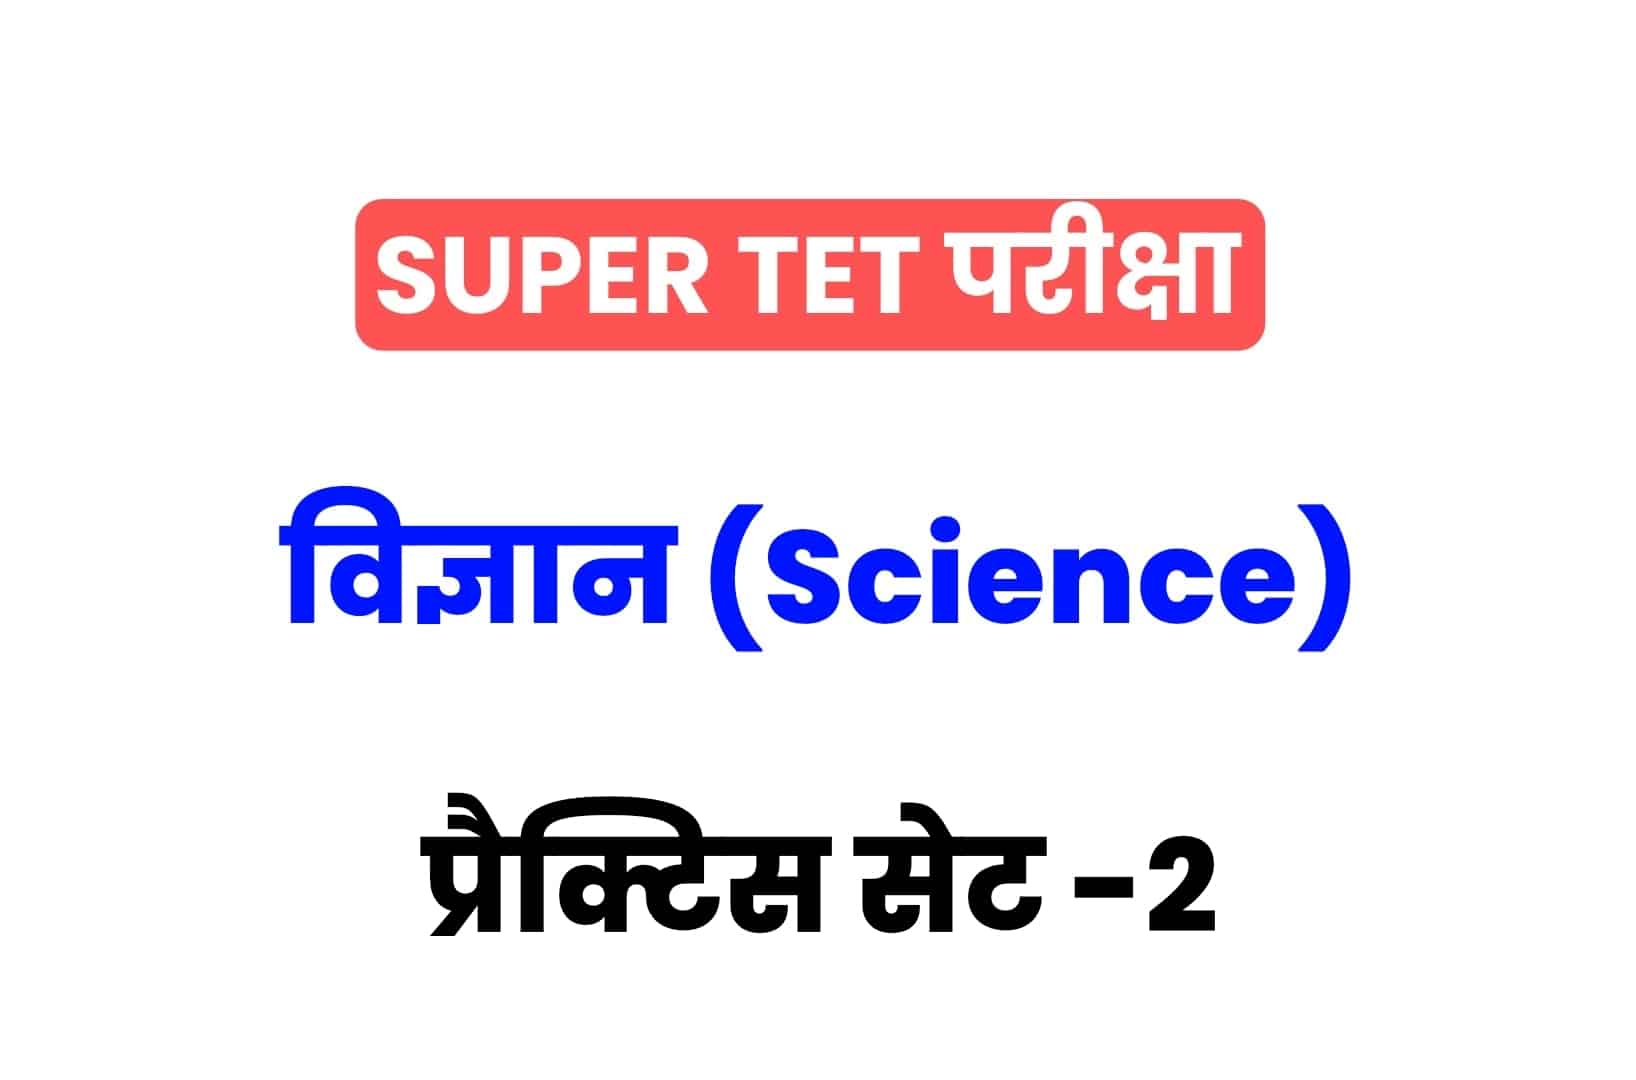 SUPER TET 2022 Science प्रैक्टिस सेट 2: विज्ञान के 15 ऐसे प्रश्न जो आगामी सुपर टेट परीक्षा में पूछे जा सकते हैं, अभी देखें